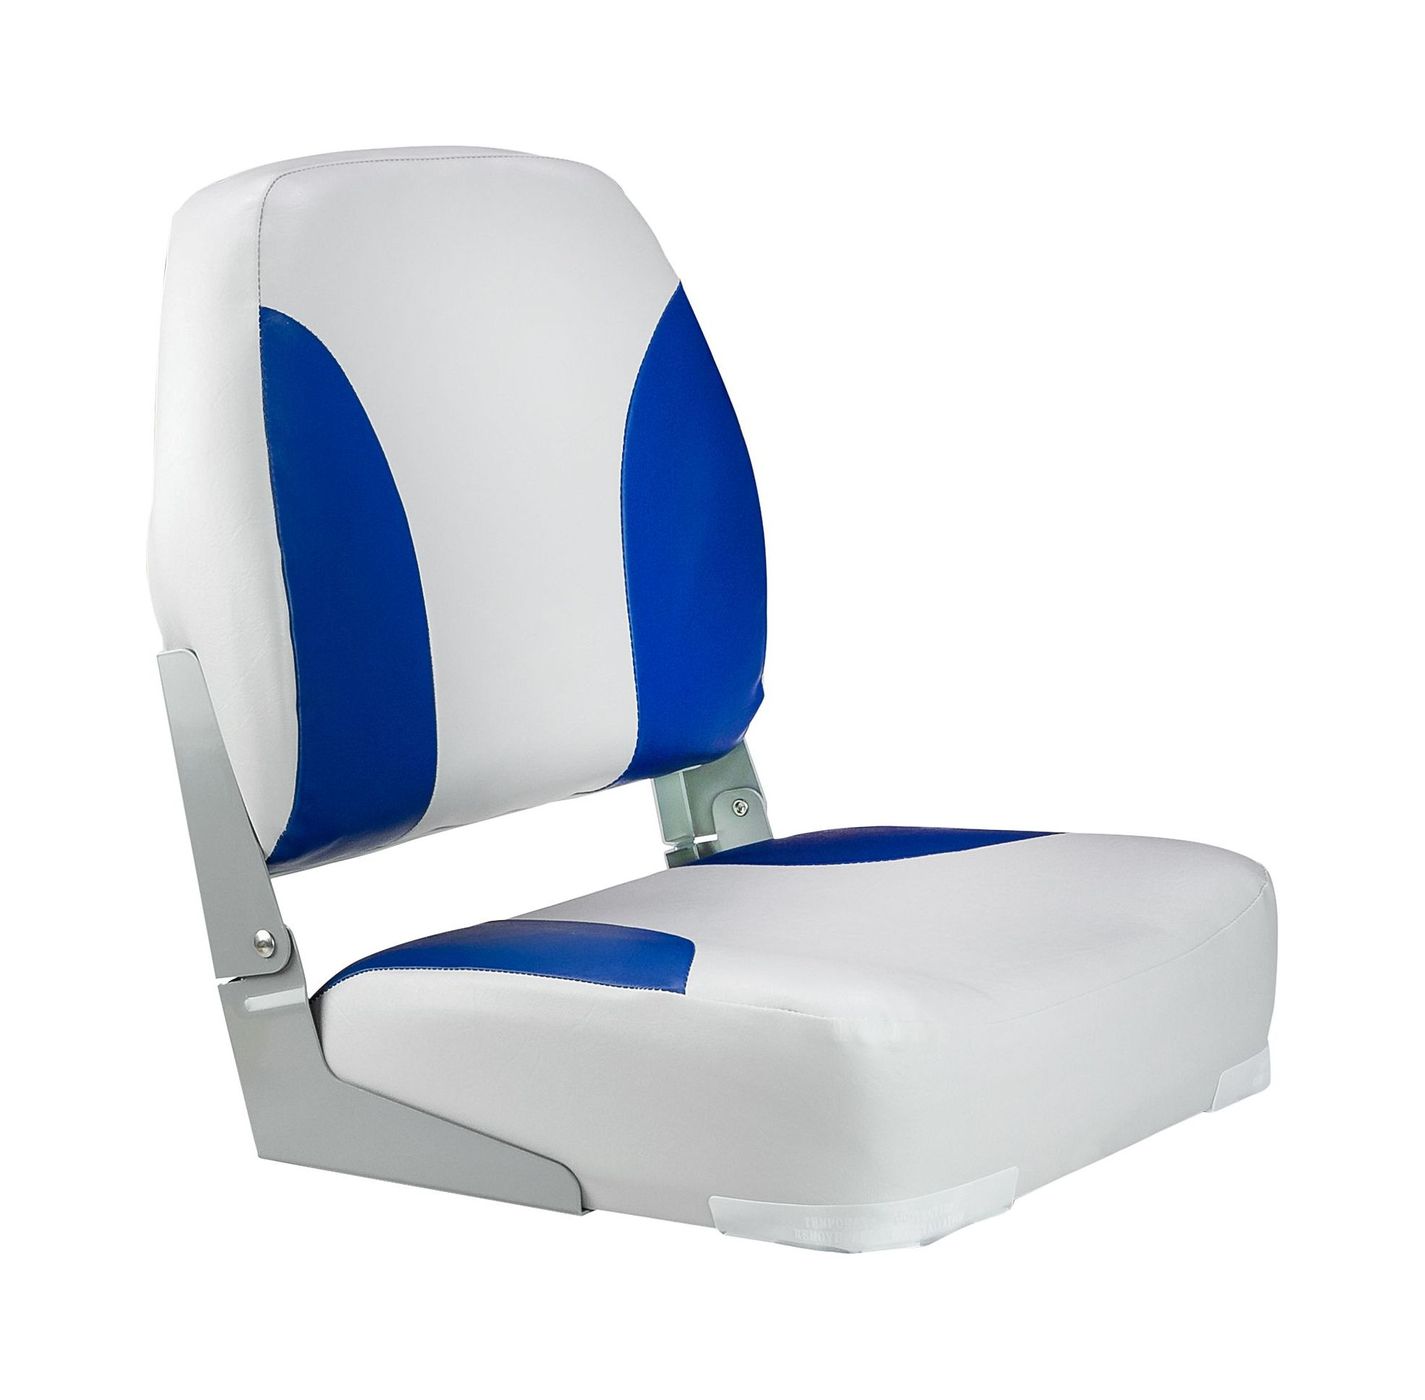 Кресло мягкое складное Classic, обивка винил, цвет серый/синий, Marine Rocket 75102GB-MR кресло с болстером ocean flip up обивка белый синий винил 13127 mr